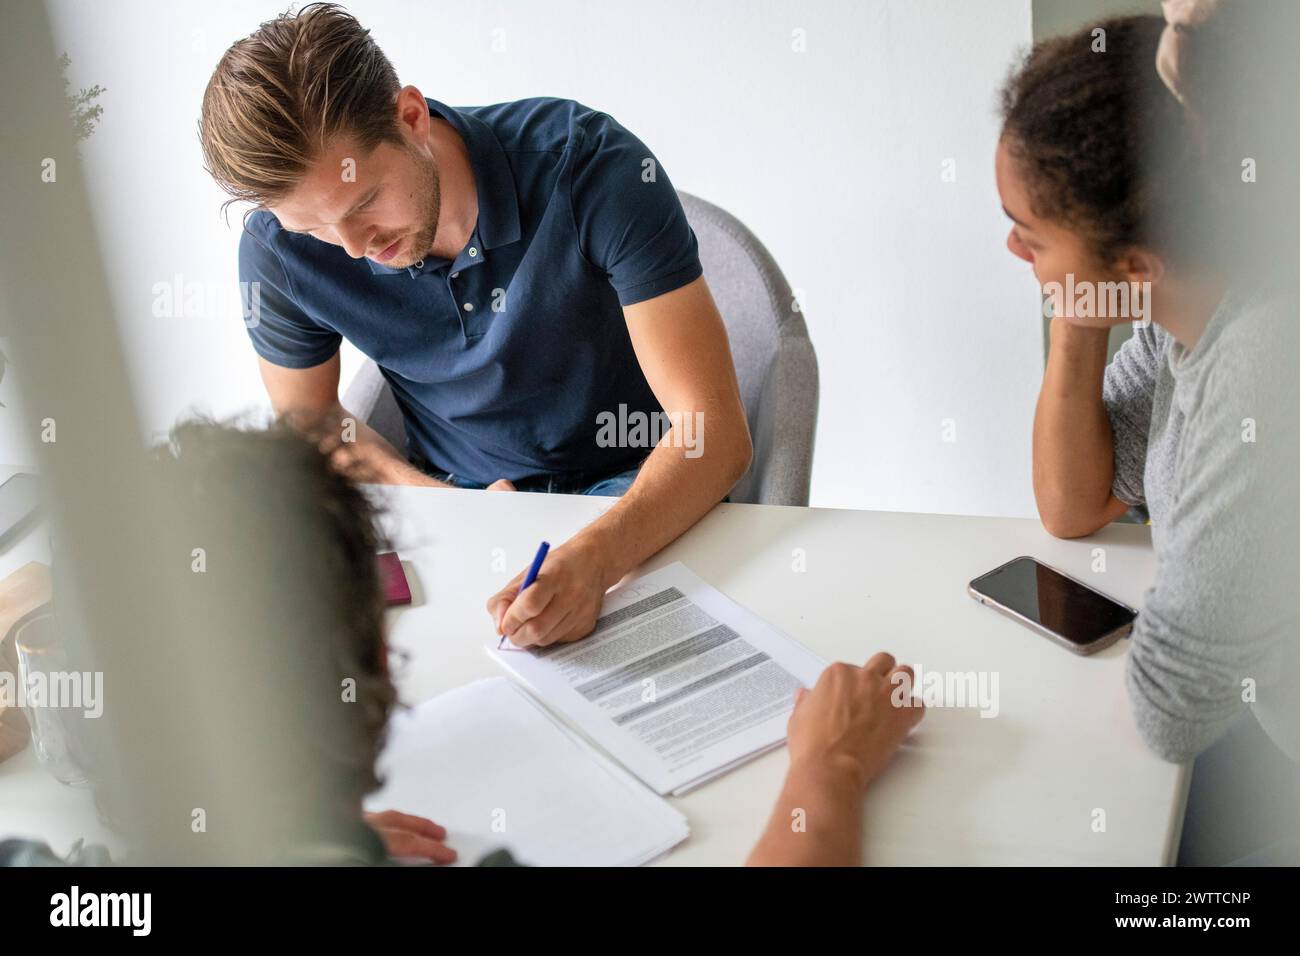 Les membres de l'équipe concentrés examinent les documents à une table blanche. Banque D'Images